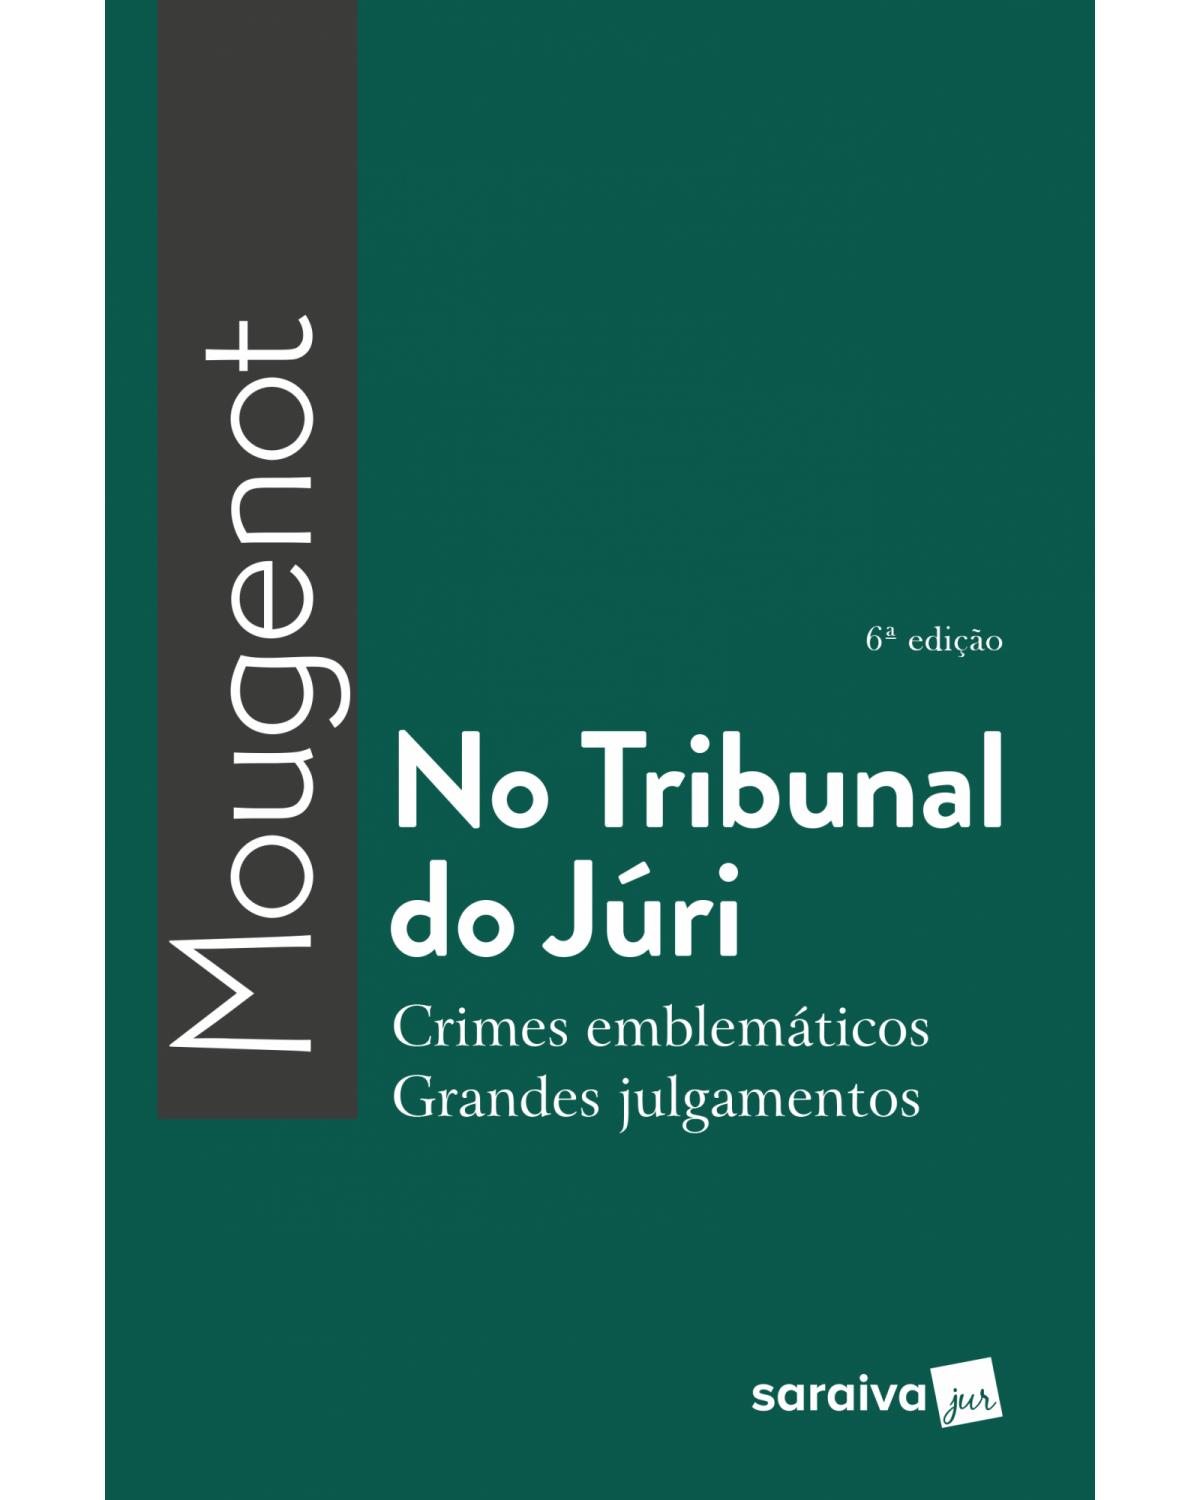 No tribunal do júri - crimes emblemáticos, grandes julgamentos - 6ª Edição | 2018